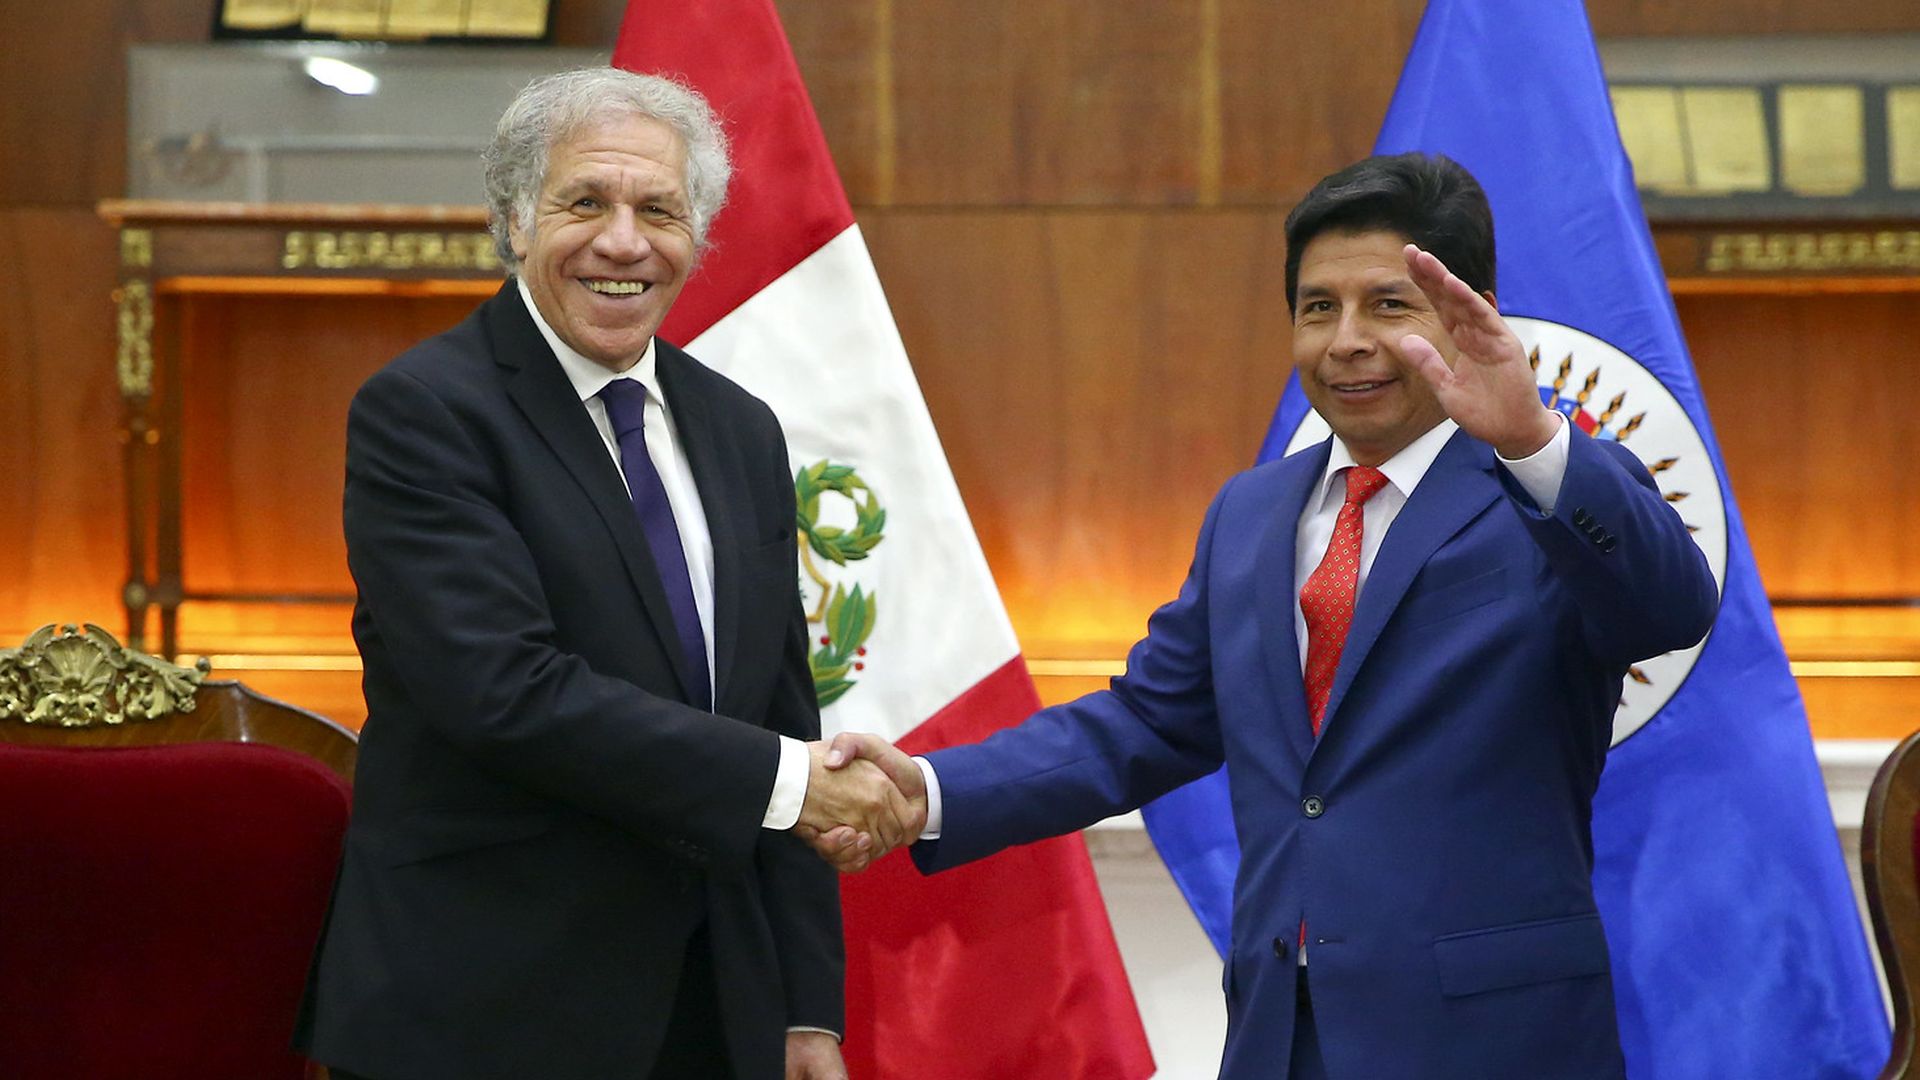 Luis Almagro coincide con Pedro Castillo en que debe existir una tregua política para superar la crisis en Perú